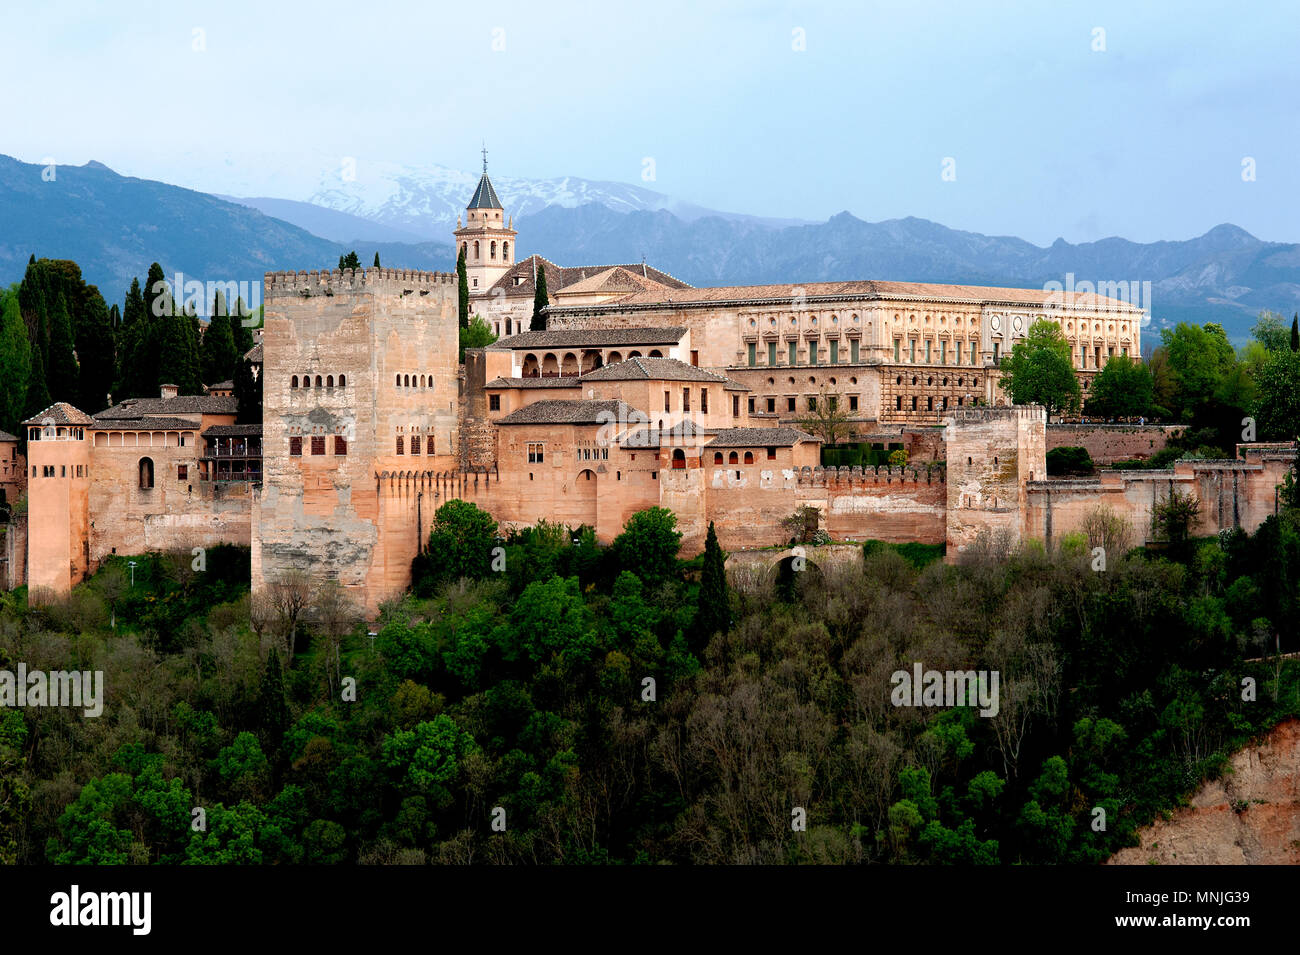 Il palazzo di Alhambra nella città spagnola di Granada è stata costruita dai Mori in un imponente stile islamico di architettura ed è un sito patrimonio dell'umanità. Foto Stock